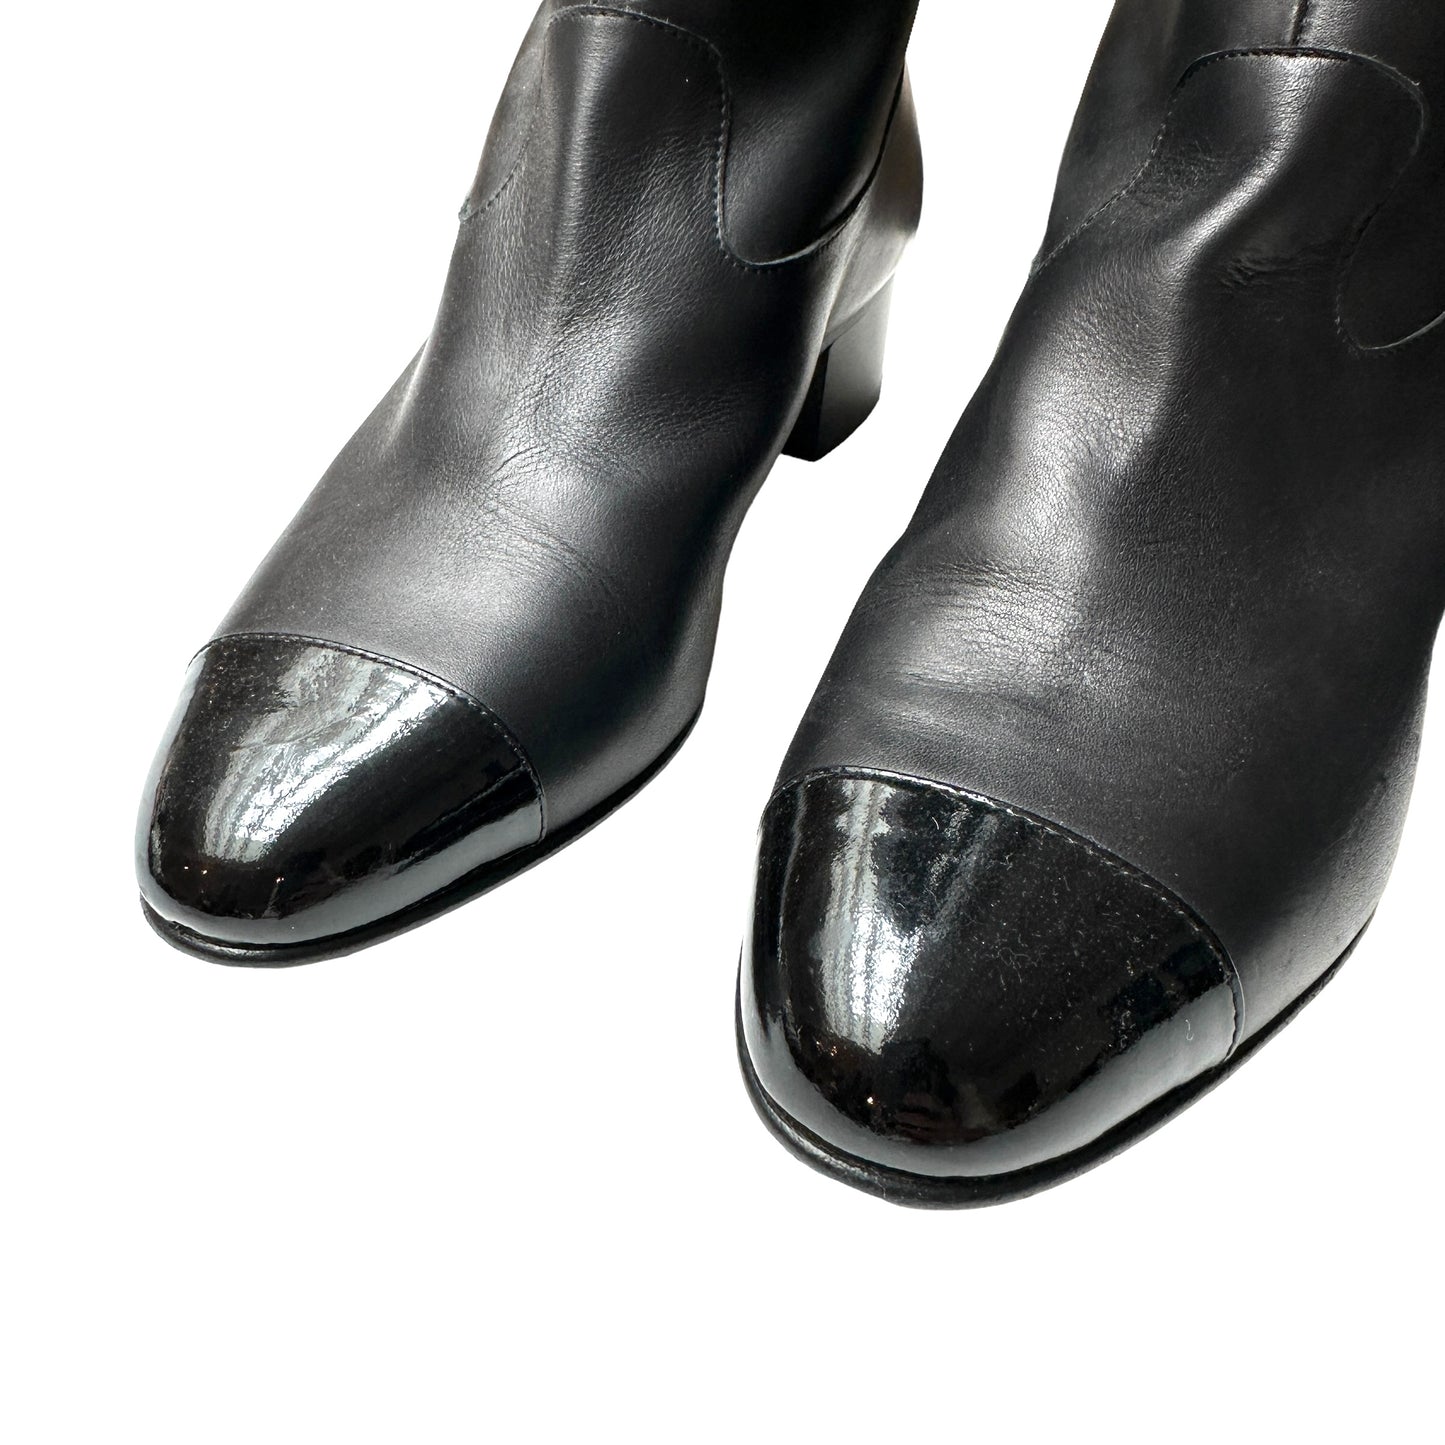 Black Tall Boots - 9.5